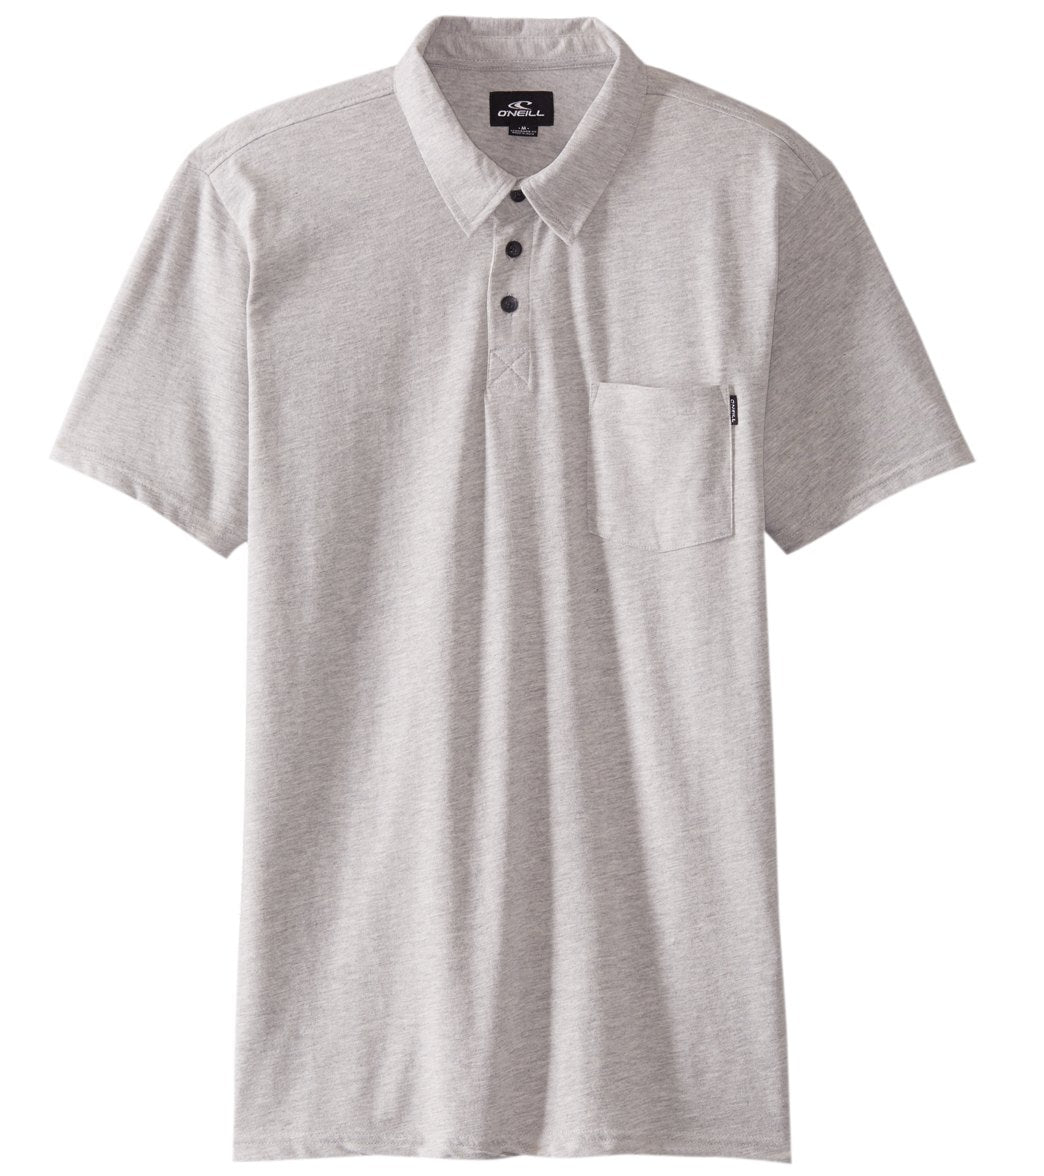 O'neill Men's Fraser Polo Shirt - Fog Small Cotton/Polyester - Swimoutlet.com